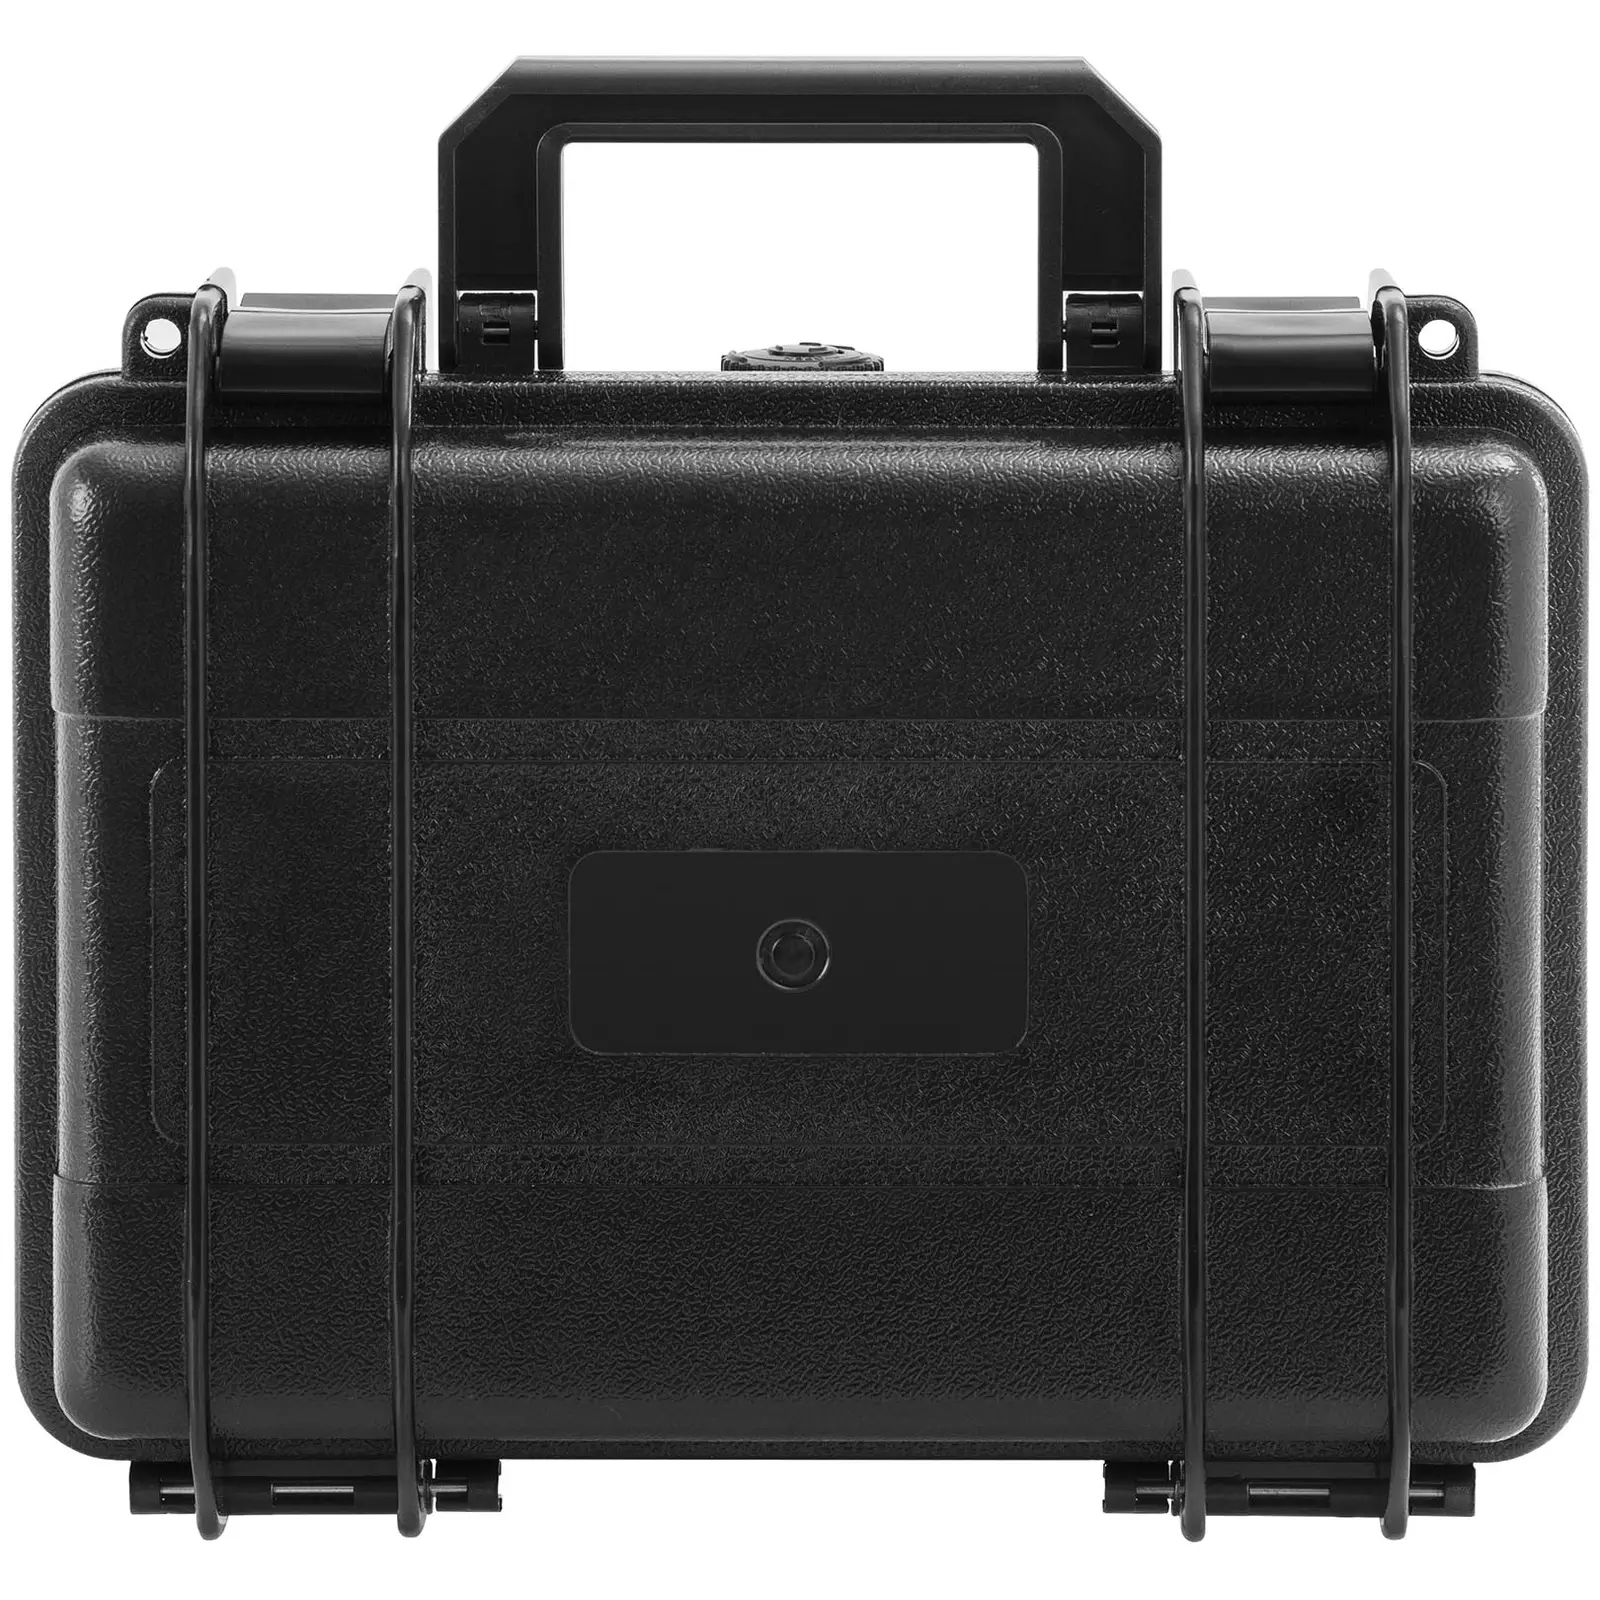 Trda torbica za fotoaparat - vodotesna - 2 l - črna - 23,5 x 18,8 x 9,6 cm